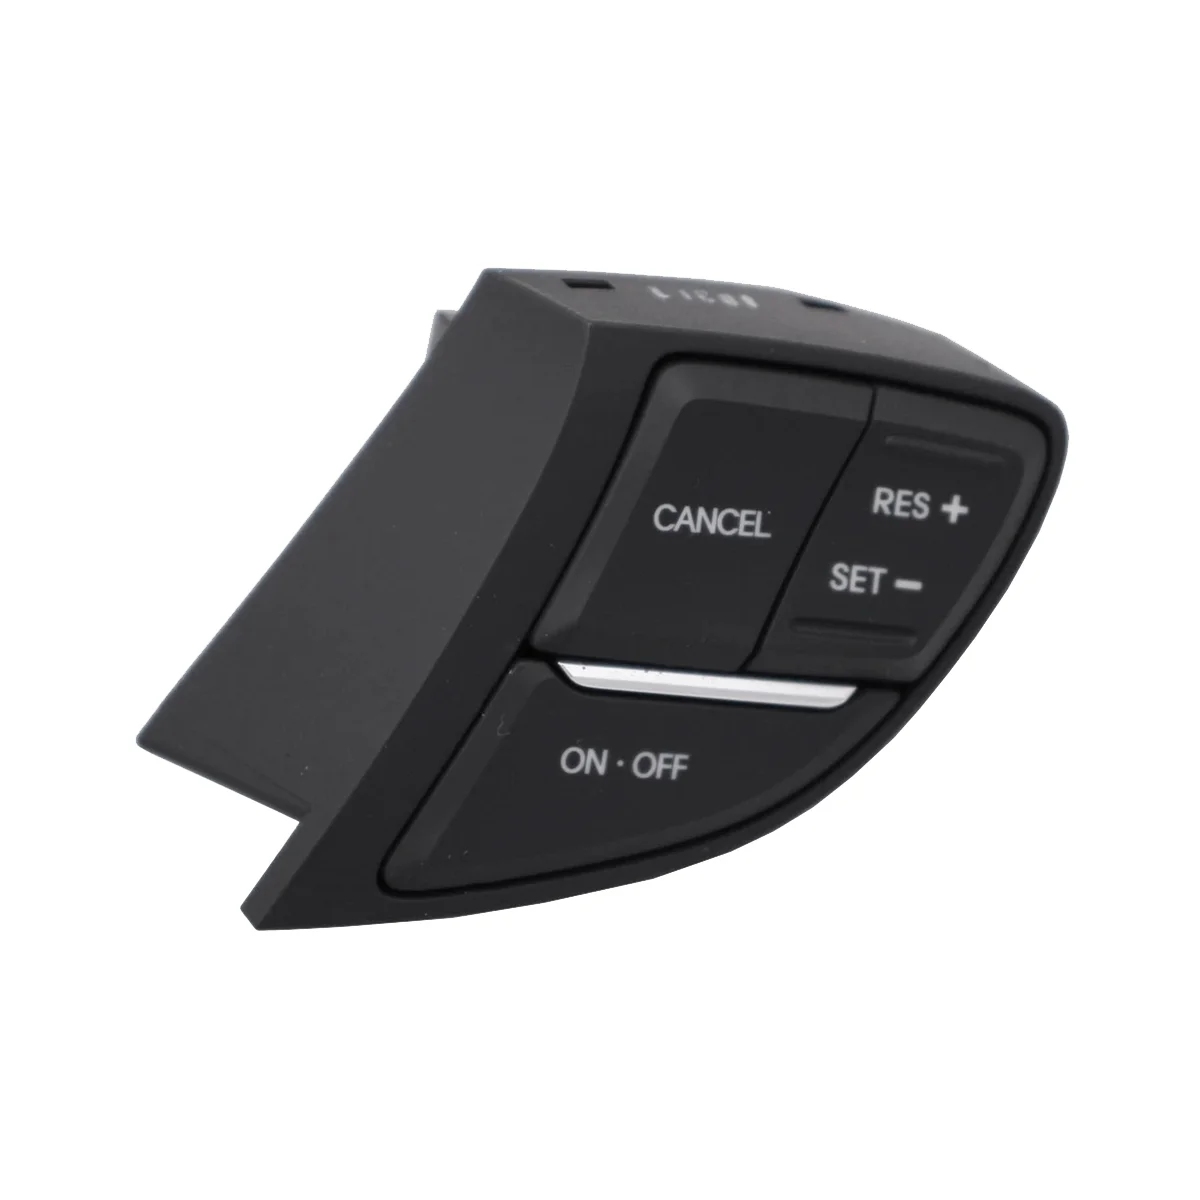 

Переключатель скорости круиз-контроля на руль для Hyundai Sonata 2011-2015, многофункциональная кнопка сброса музыки через Bluetooth